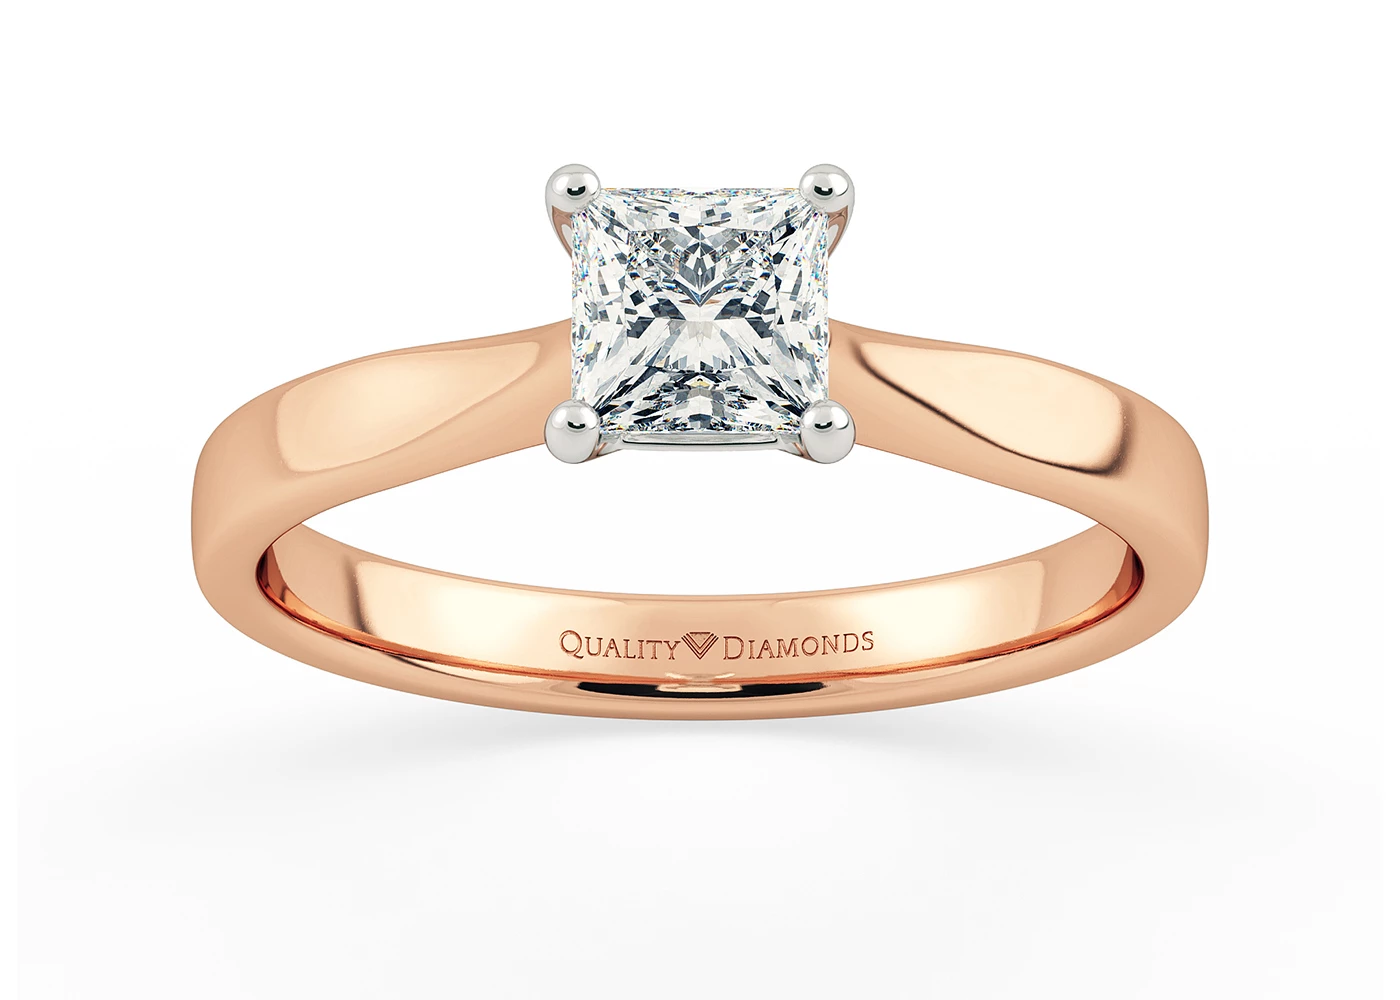 Princess Beau Diamond Ring in 9K Rose Gold